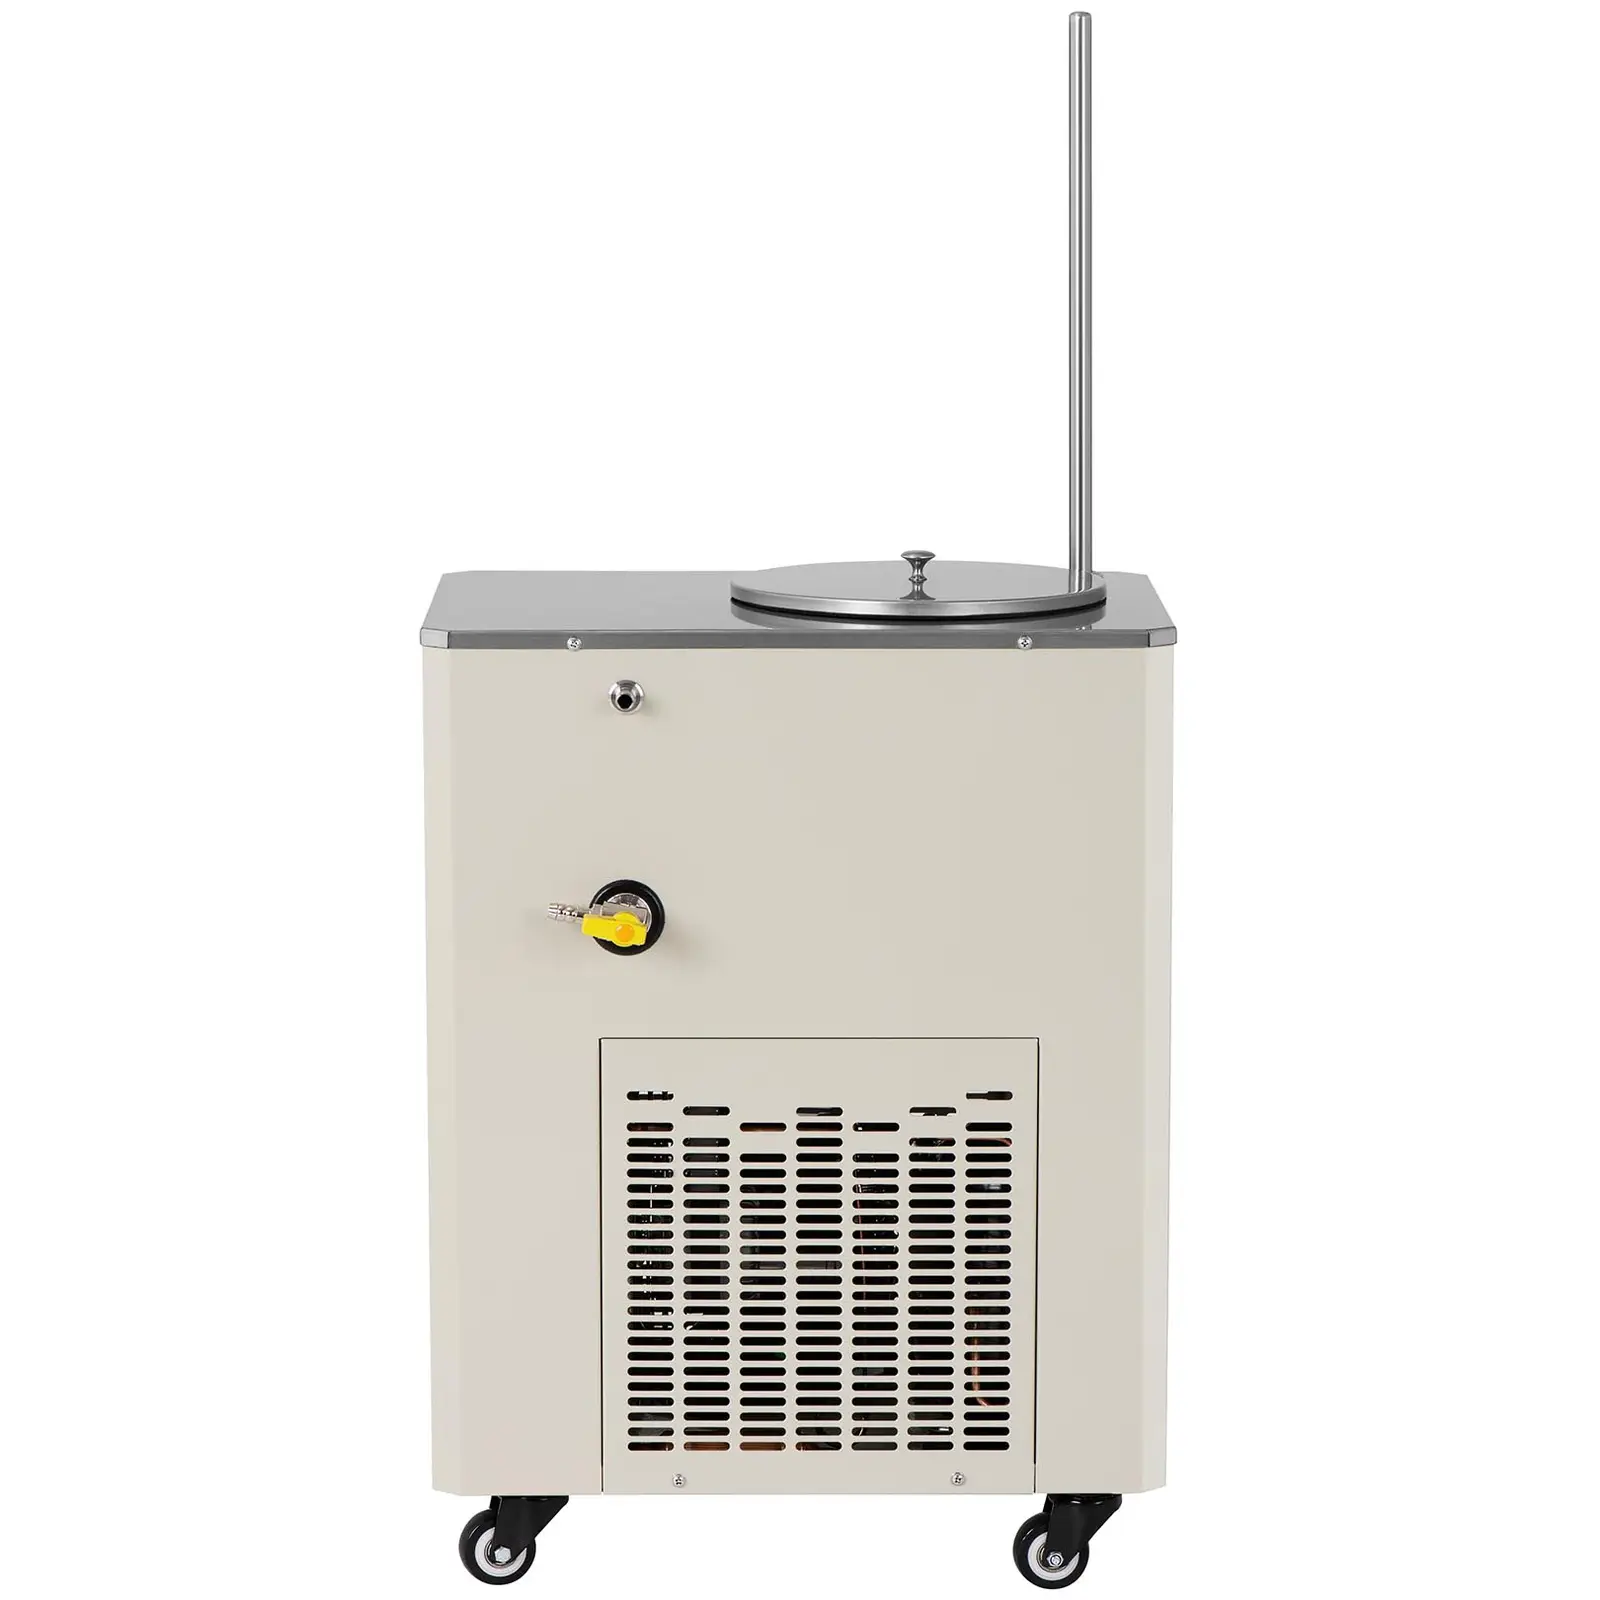 Cirkulációs hűtő - kompresszor: 726 W - -20 - 20 ℃ - 20 L/perc